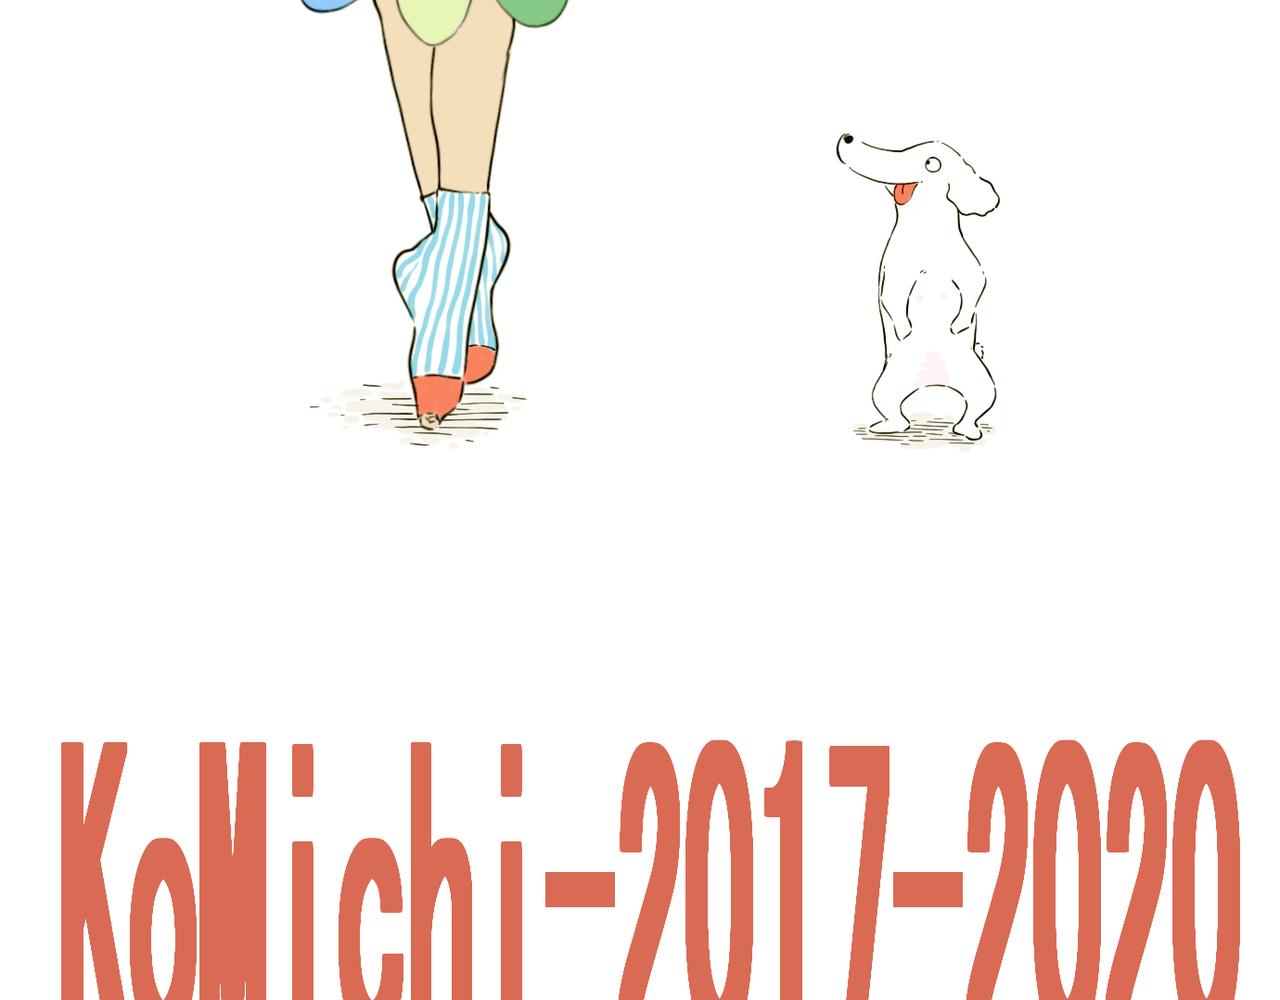 KoMichi-2017-2020 - 預告篇（疫情日常） - 1